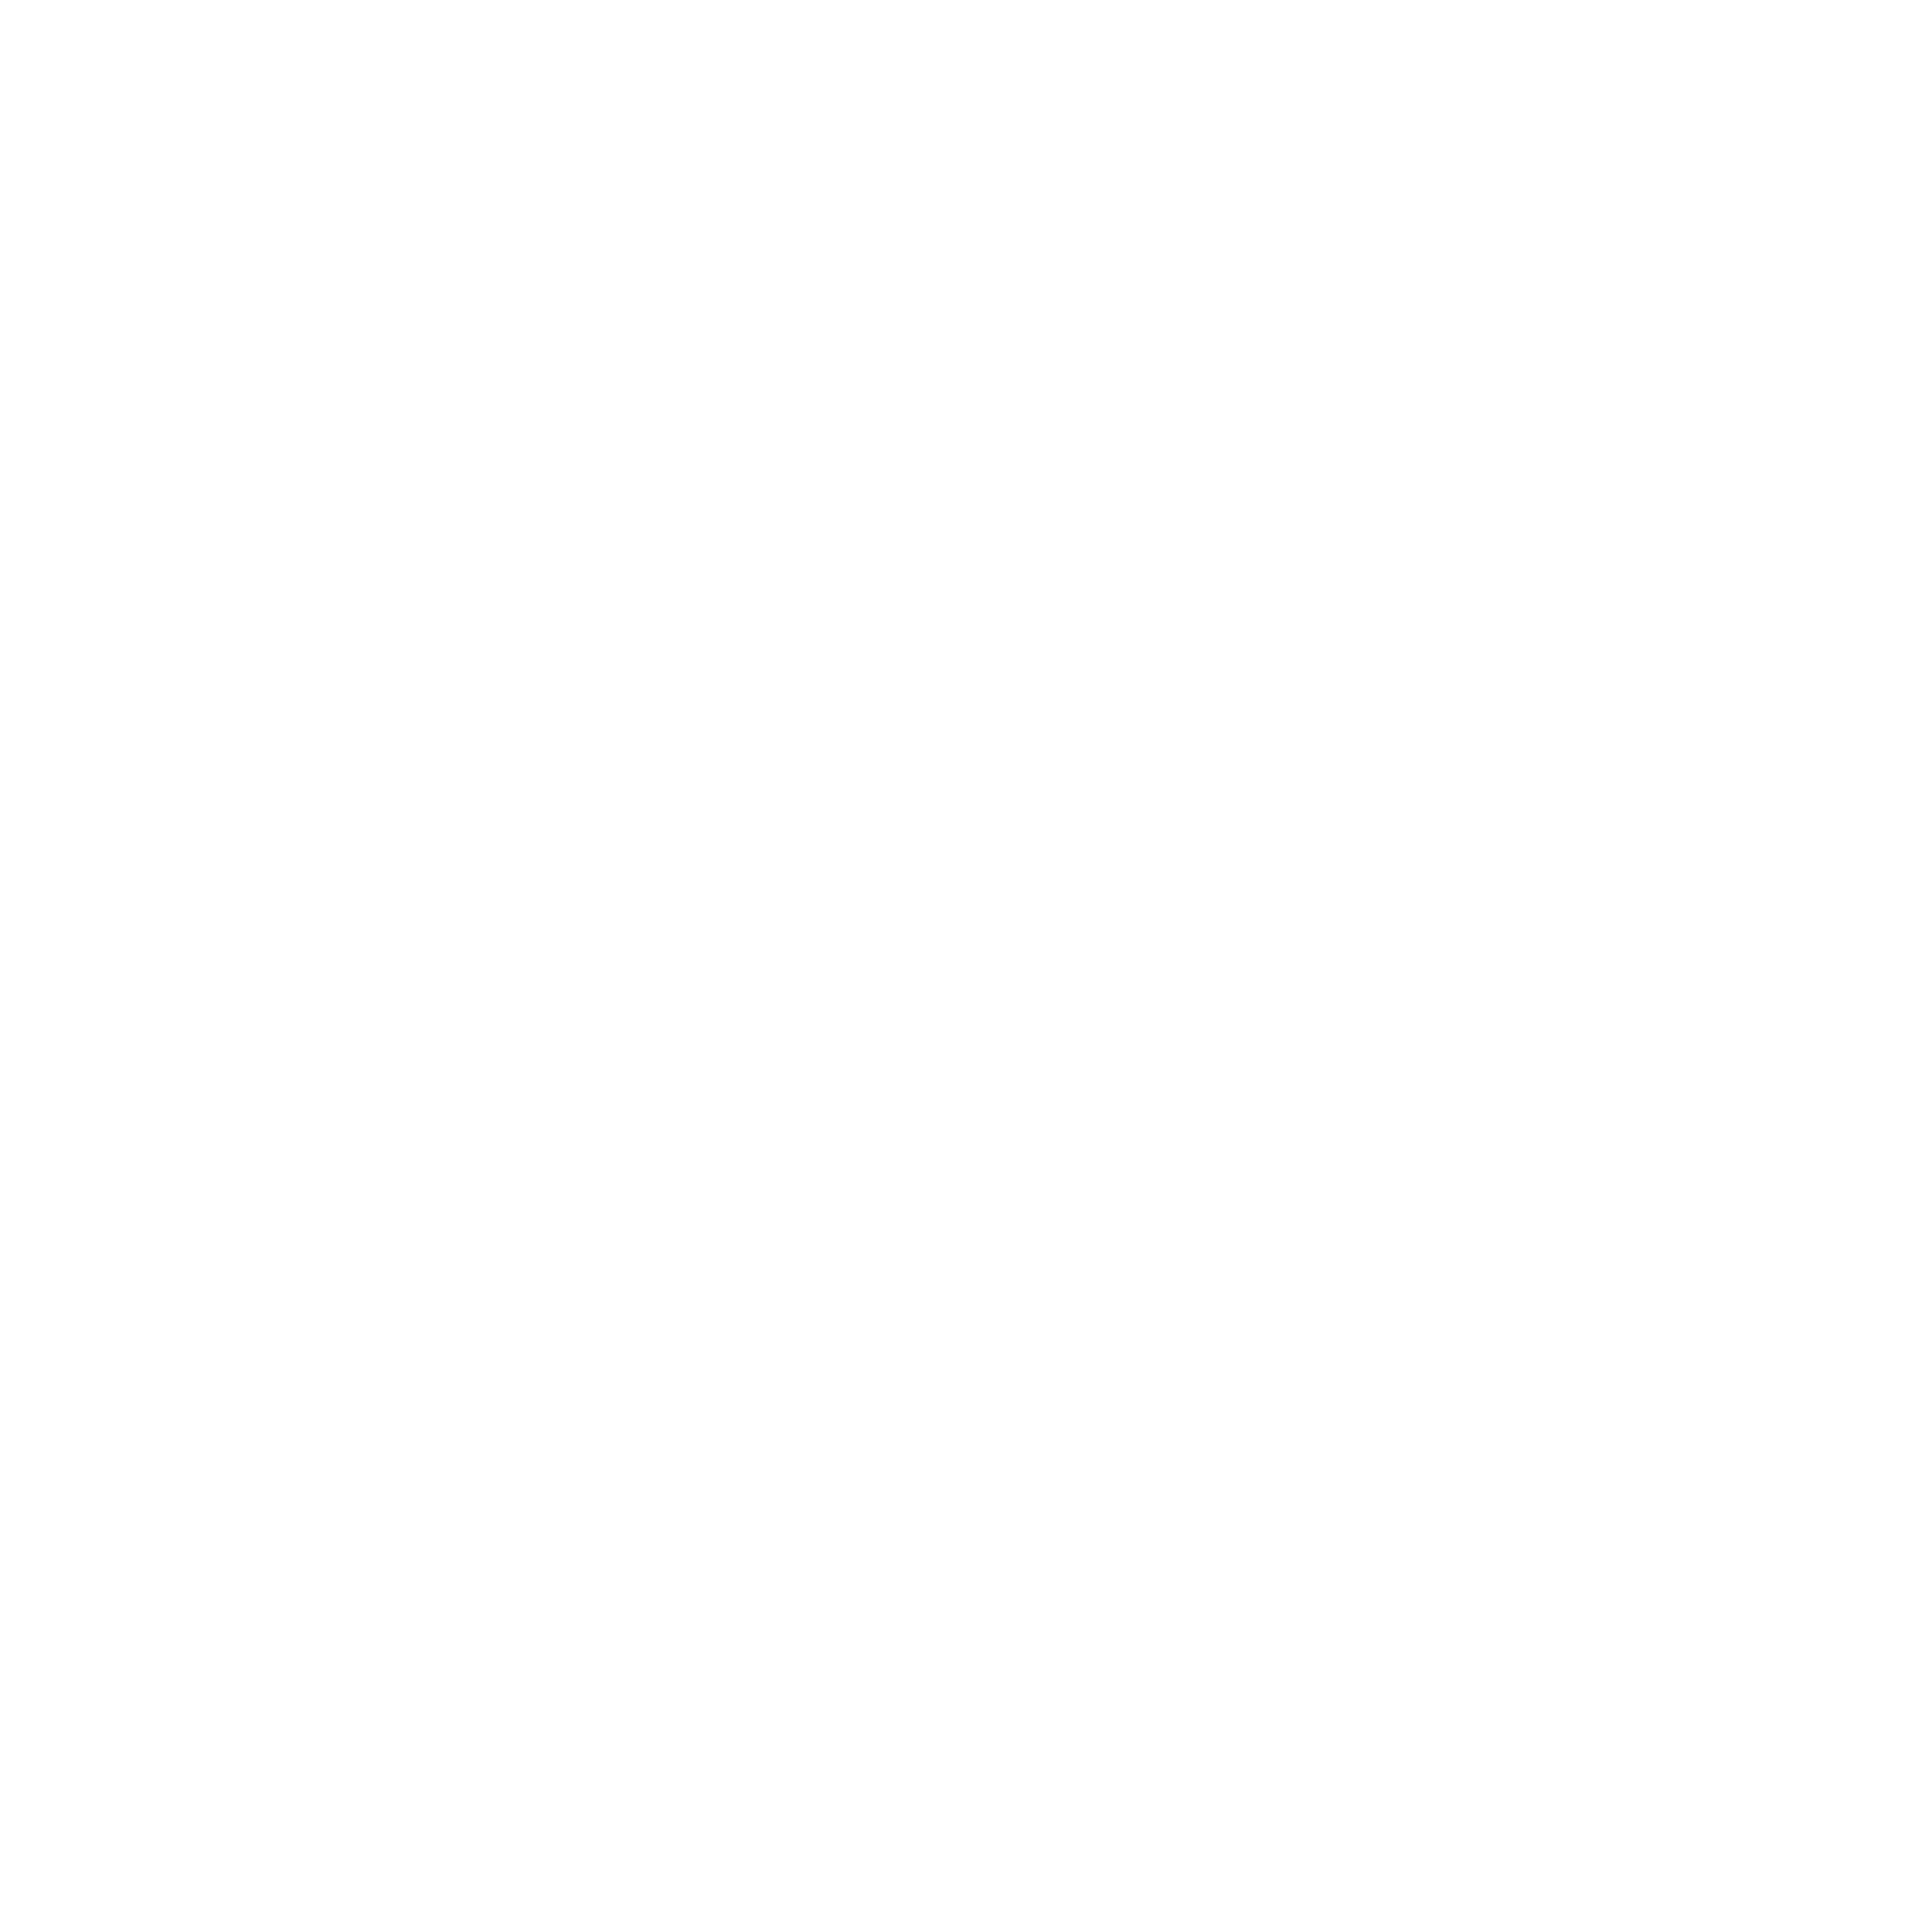 Thomas &amp; Lord